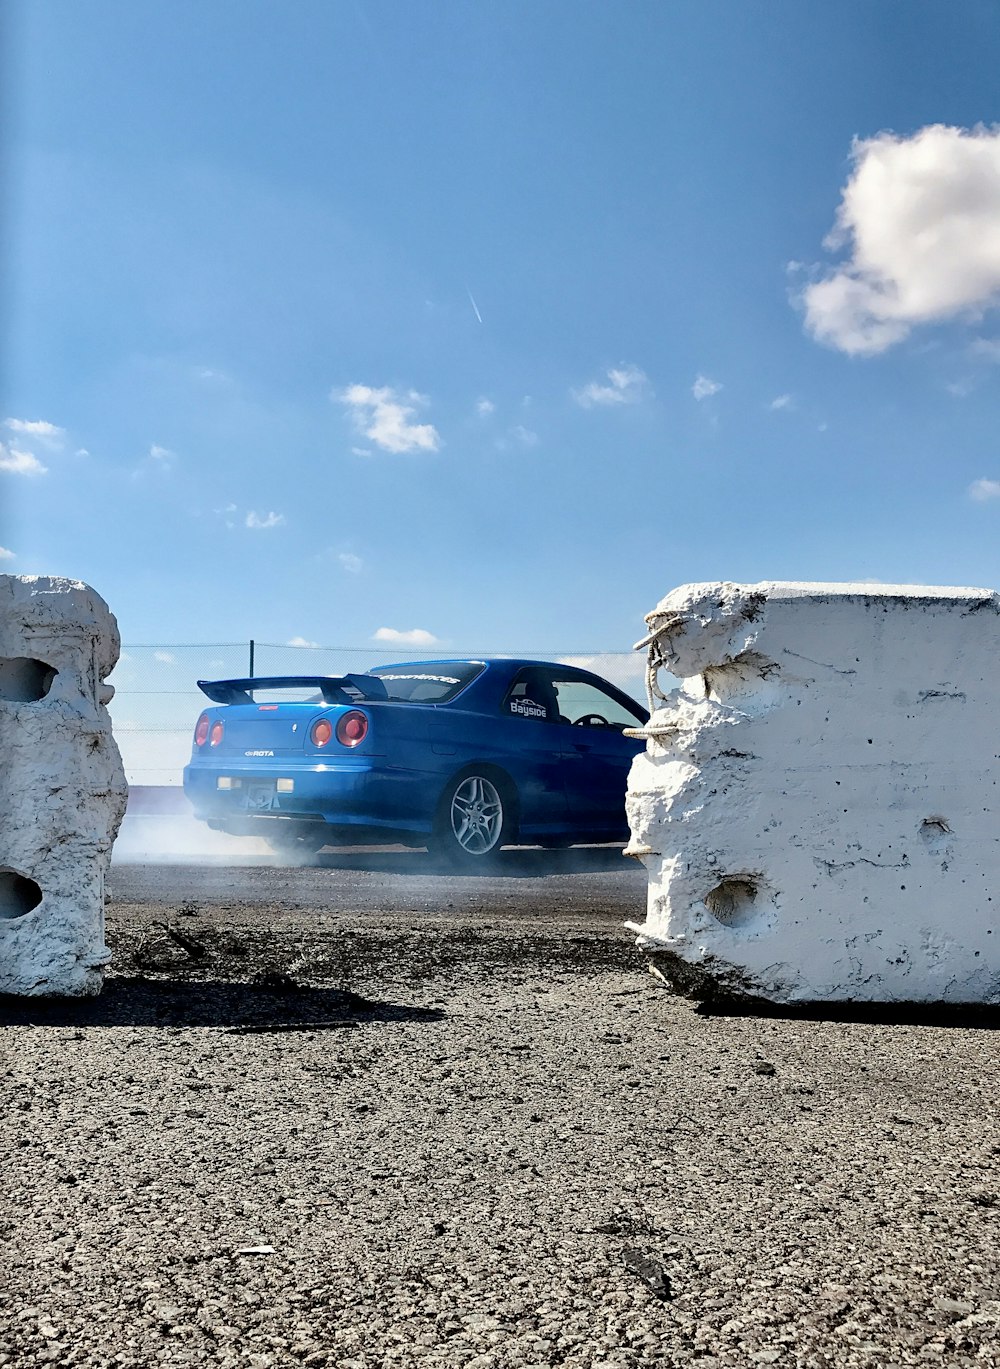 Coche Chevrolet azul aparcado junto a la pared blanca